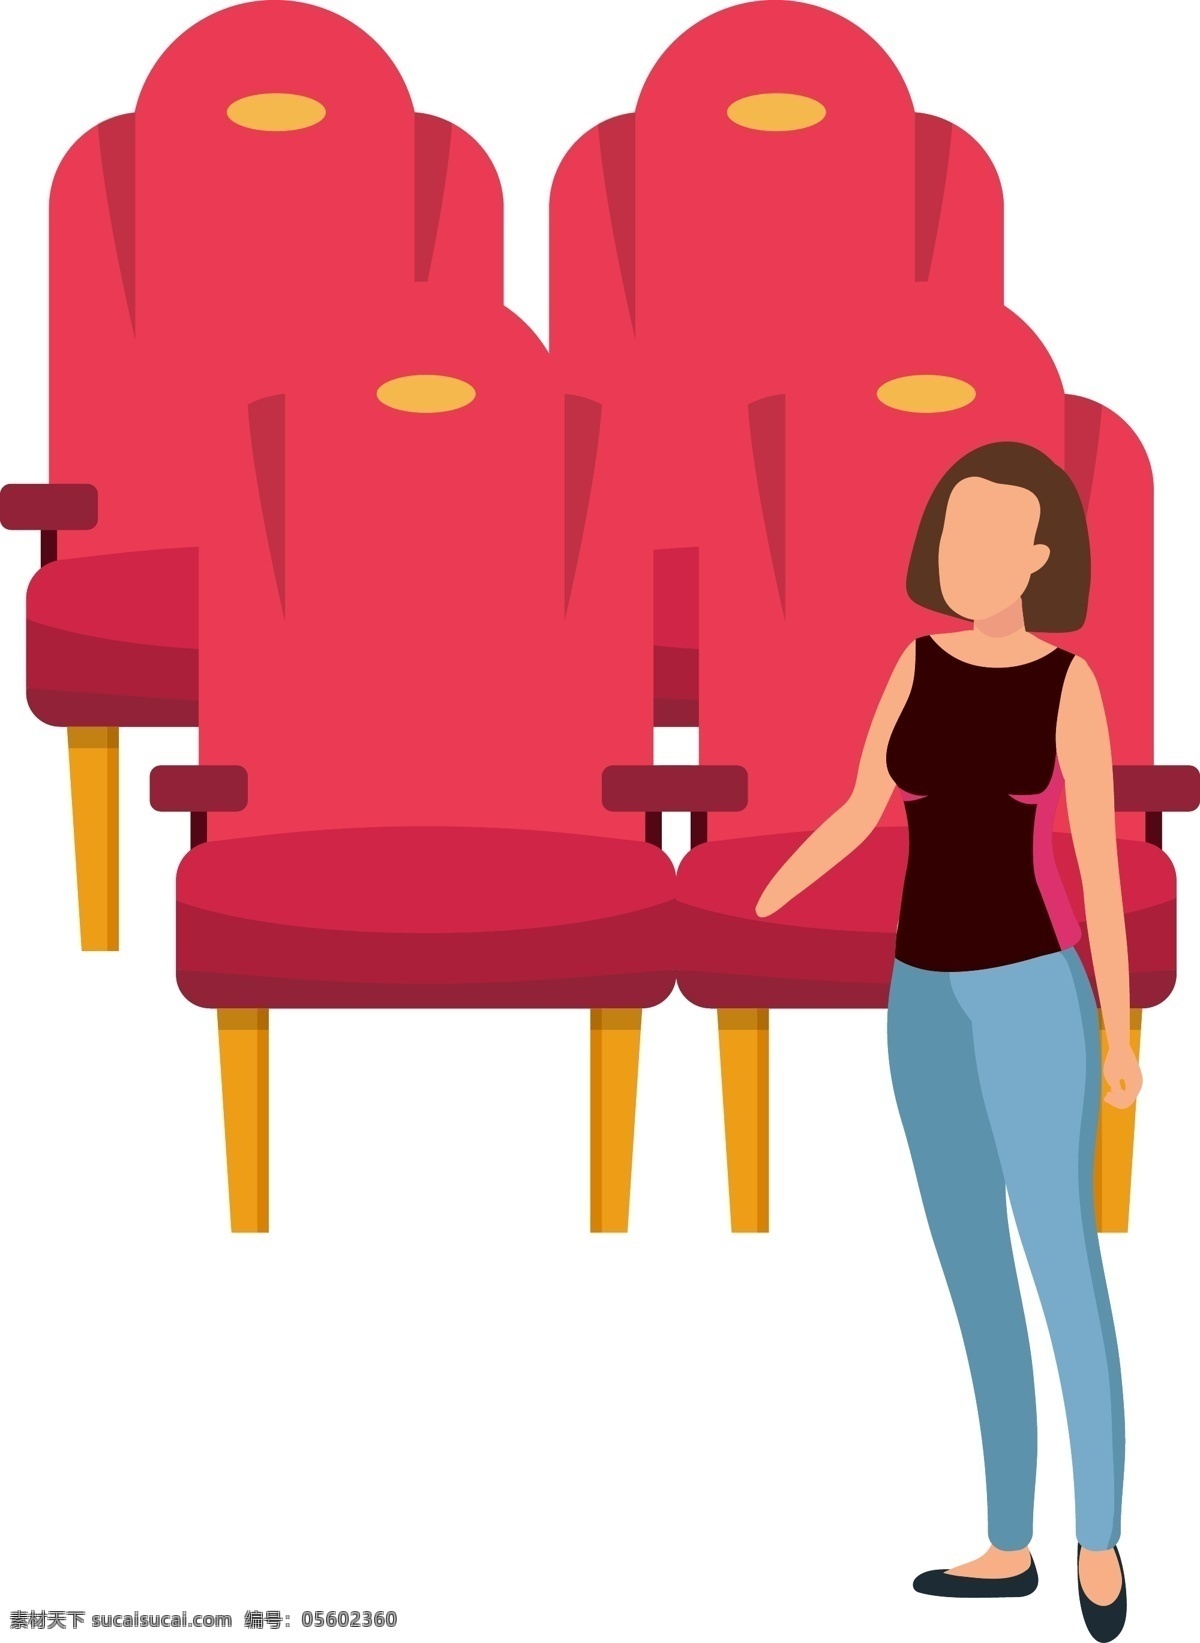 电影院 沙发 电影 人物 椅子 简约 卡通